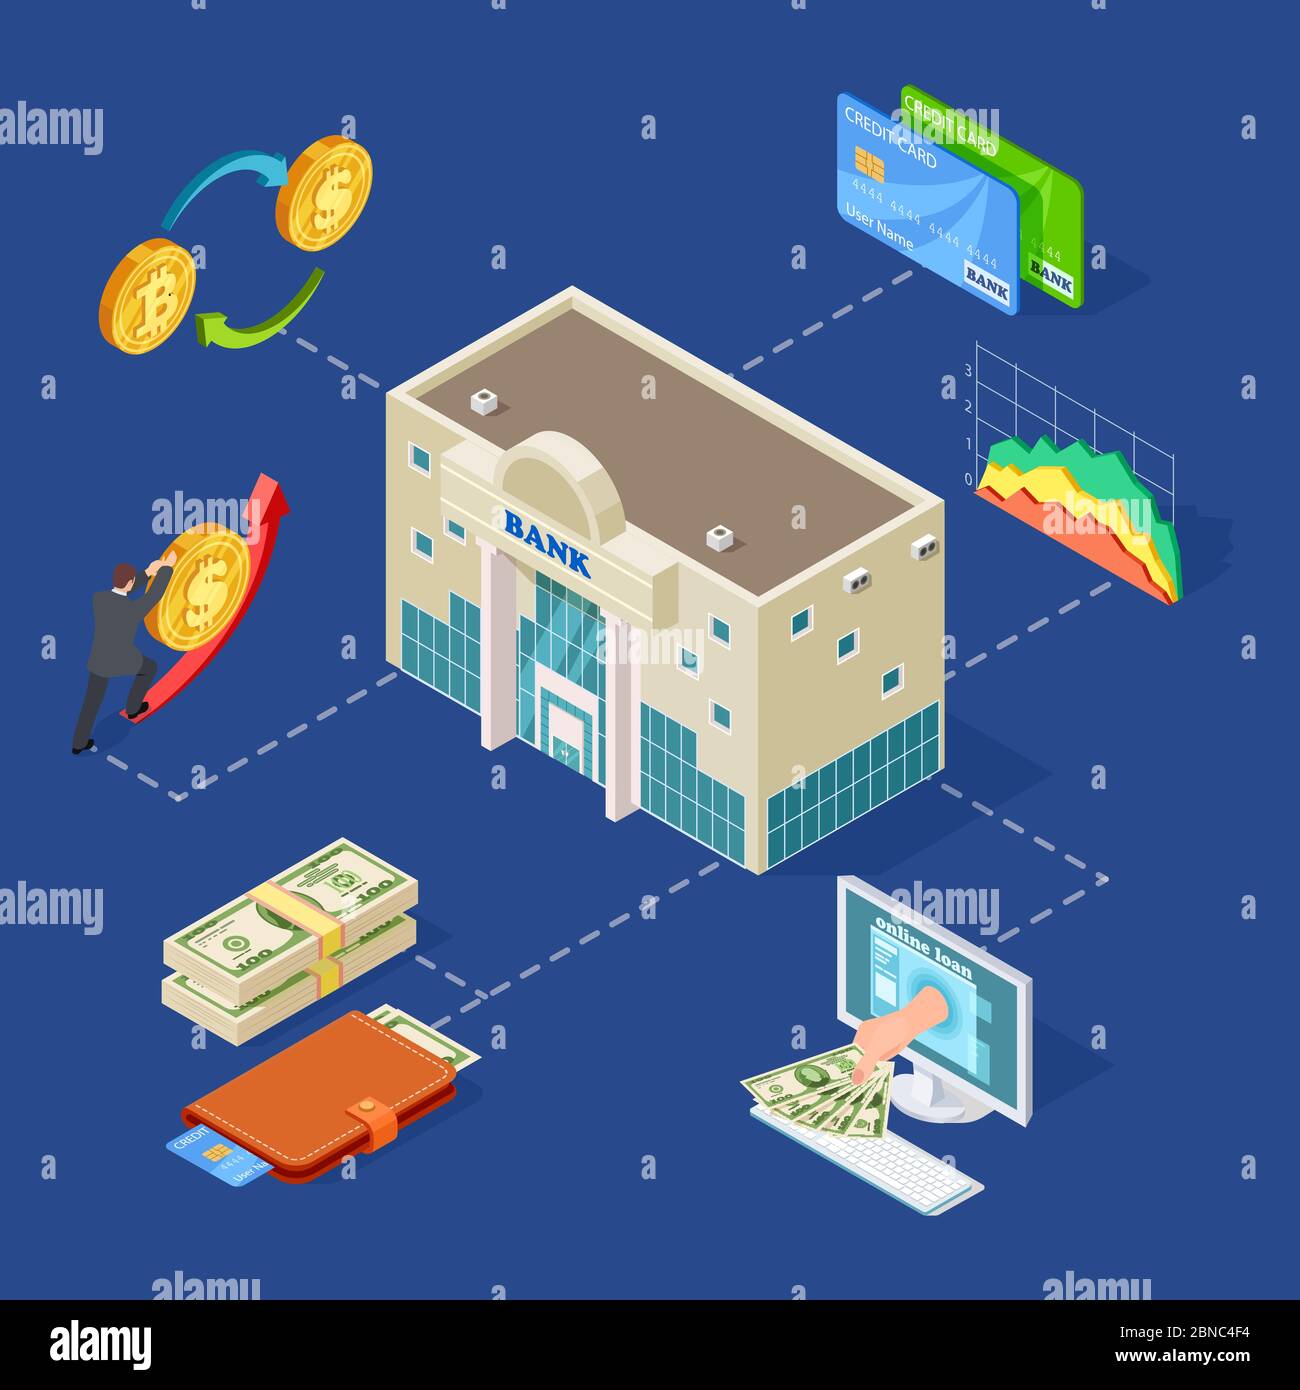 Banking isometrische Vektor-Konzept mit Bankgebäude, Münzen, Online-Dienstleistungen. Abbildung der Geschäftsbank, Banküberweisung, Online-Investition Einzahlung Stock Vektor